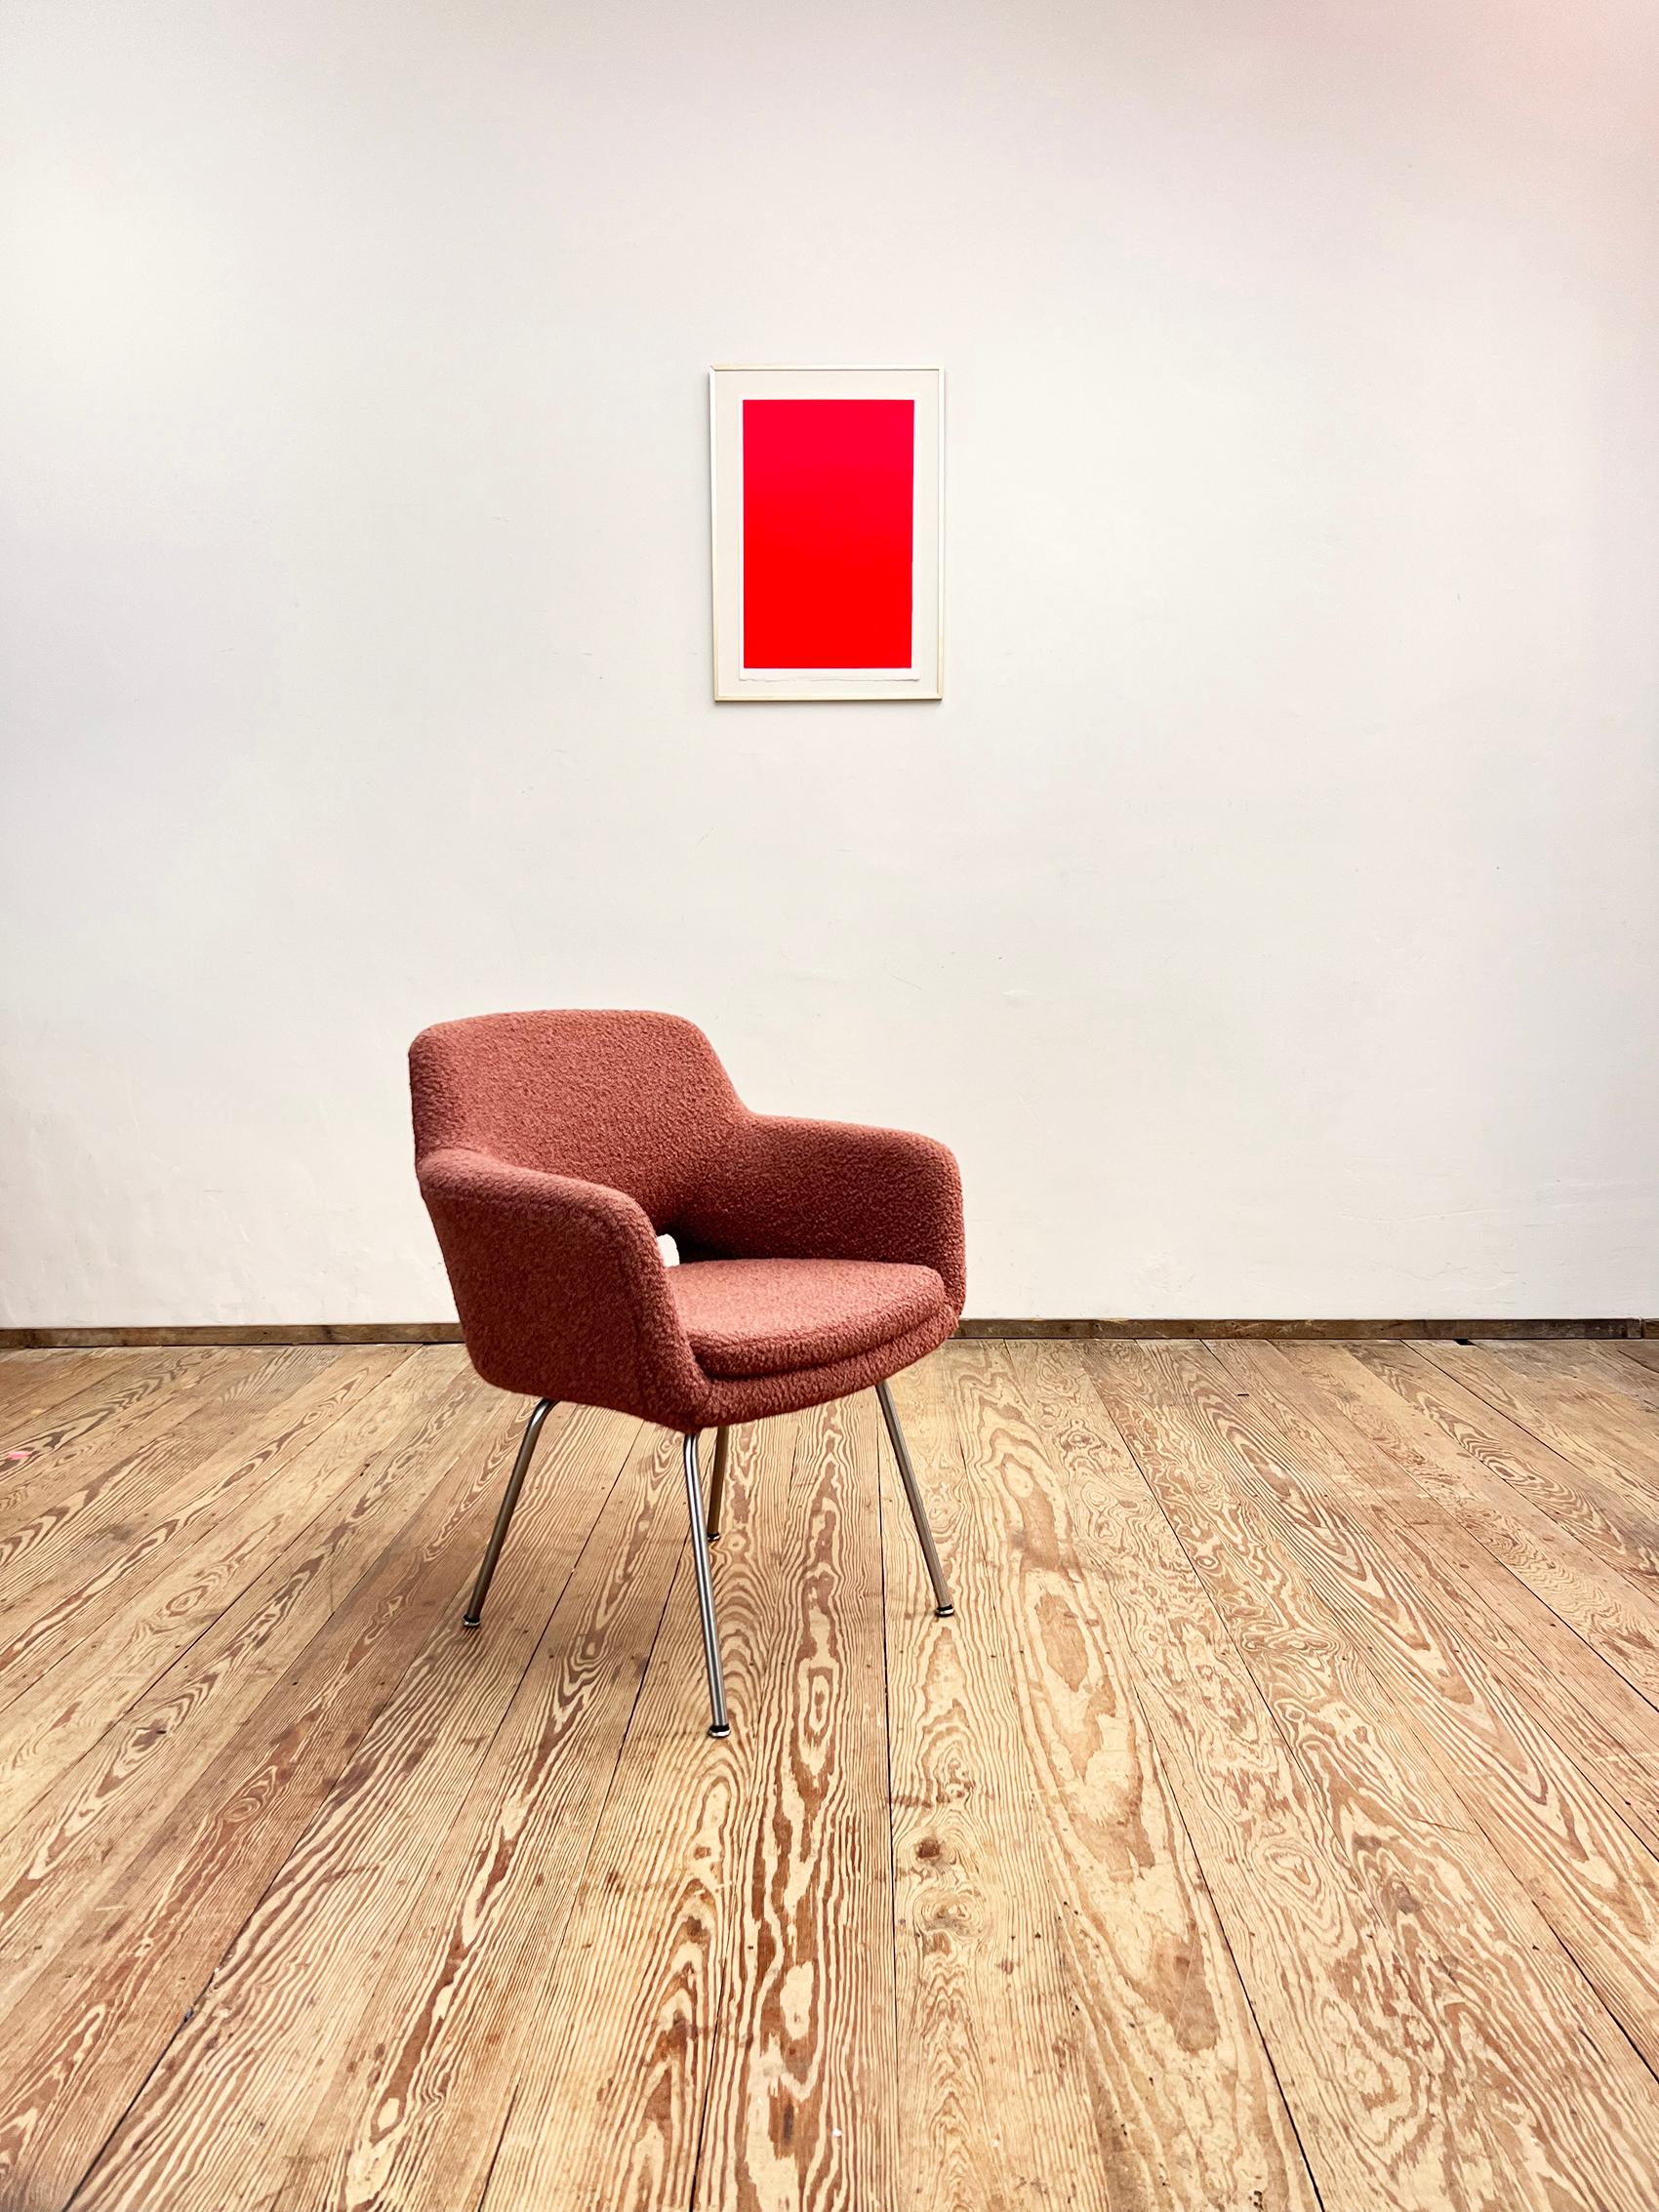 Abmessungen: 64 x 60 x 75 x 45 cm (Breite x Tiefe x Höhe x Sitzhöhe)

Dieser elegante Sessel wurde in den frühen 1950er Jahren von dem finnischen Designer Olli Mannermaa für Martela entworfen und später von Cassina und Eugen Schmidt in Deutschland